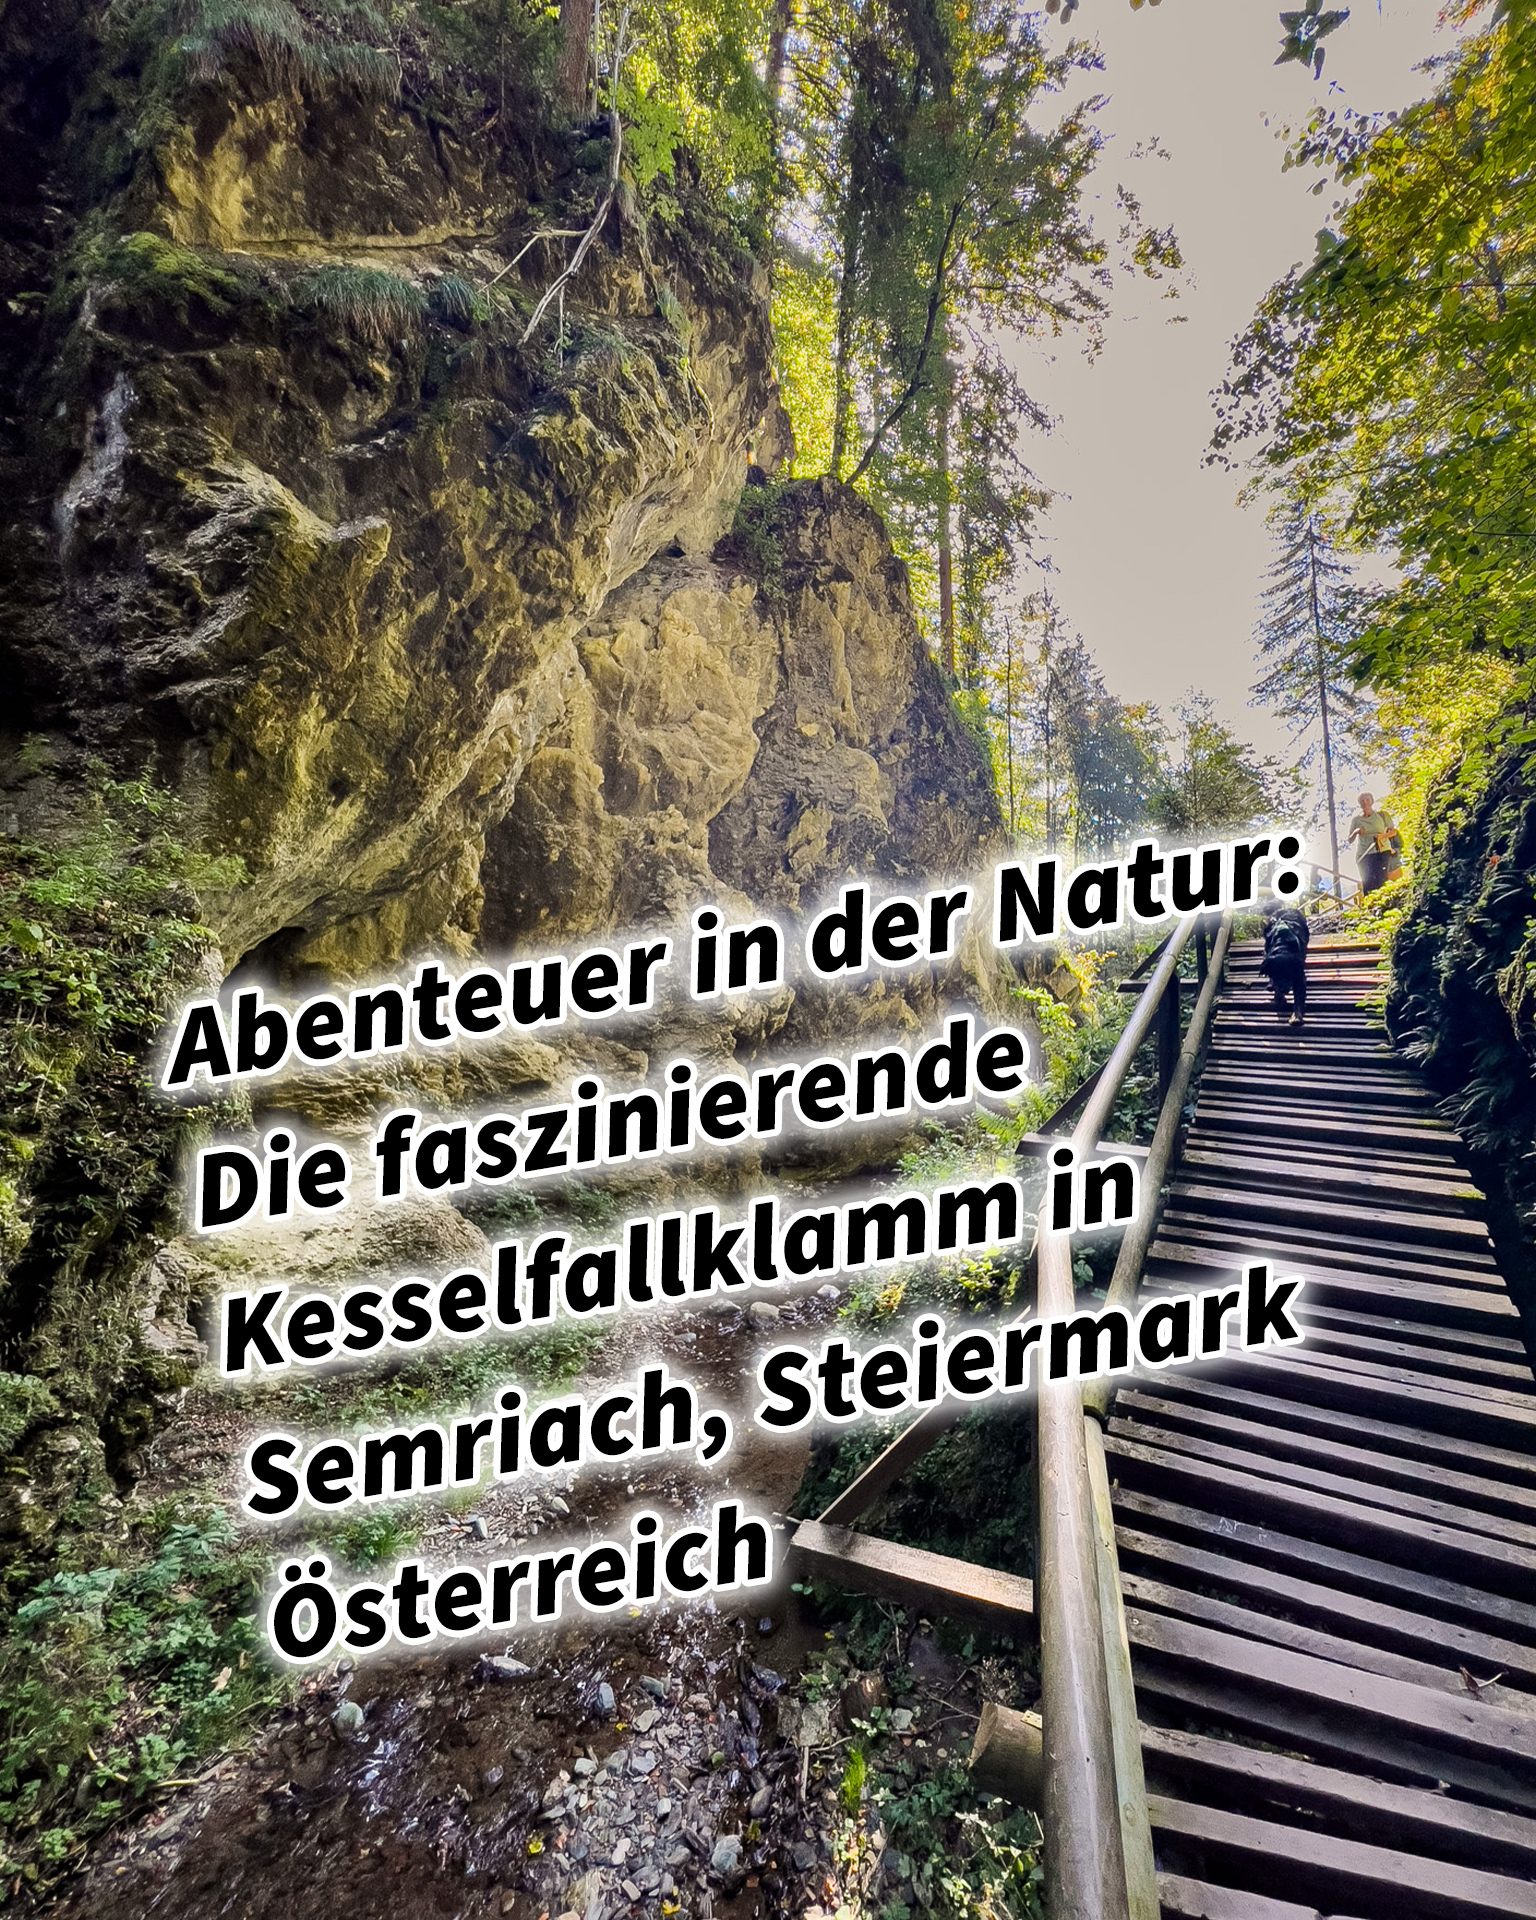 Abenteuer in der Natur: Die faszinierende Kesselfallklamm in Semriach, Steiermark, Österreich